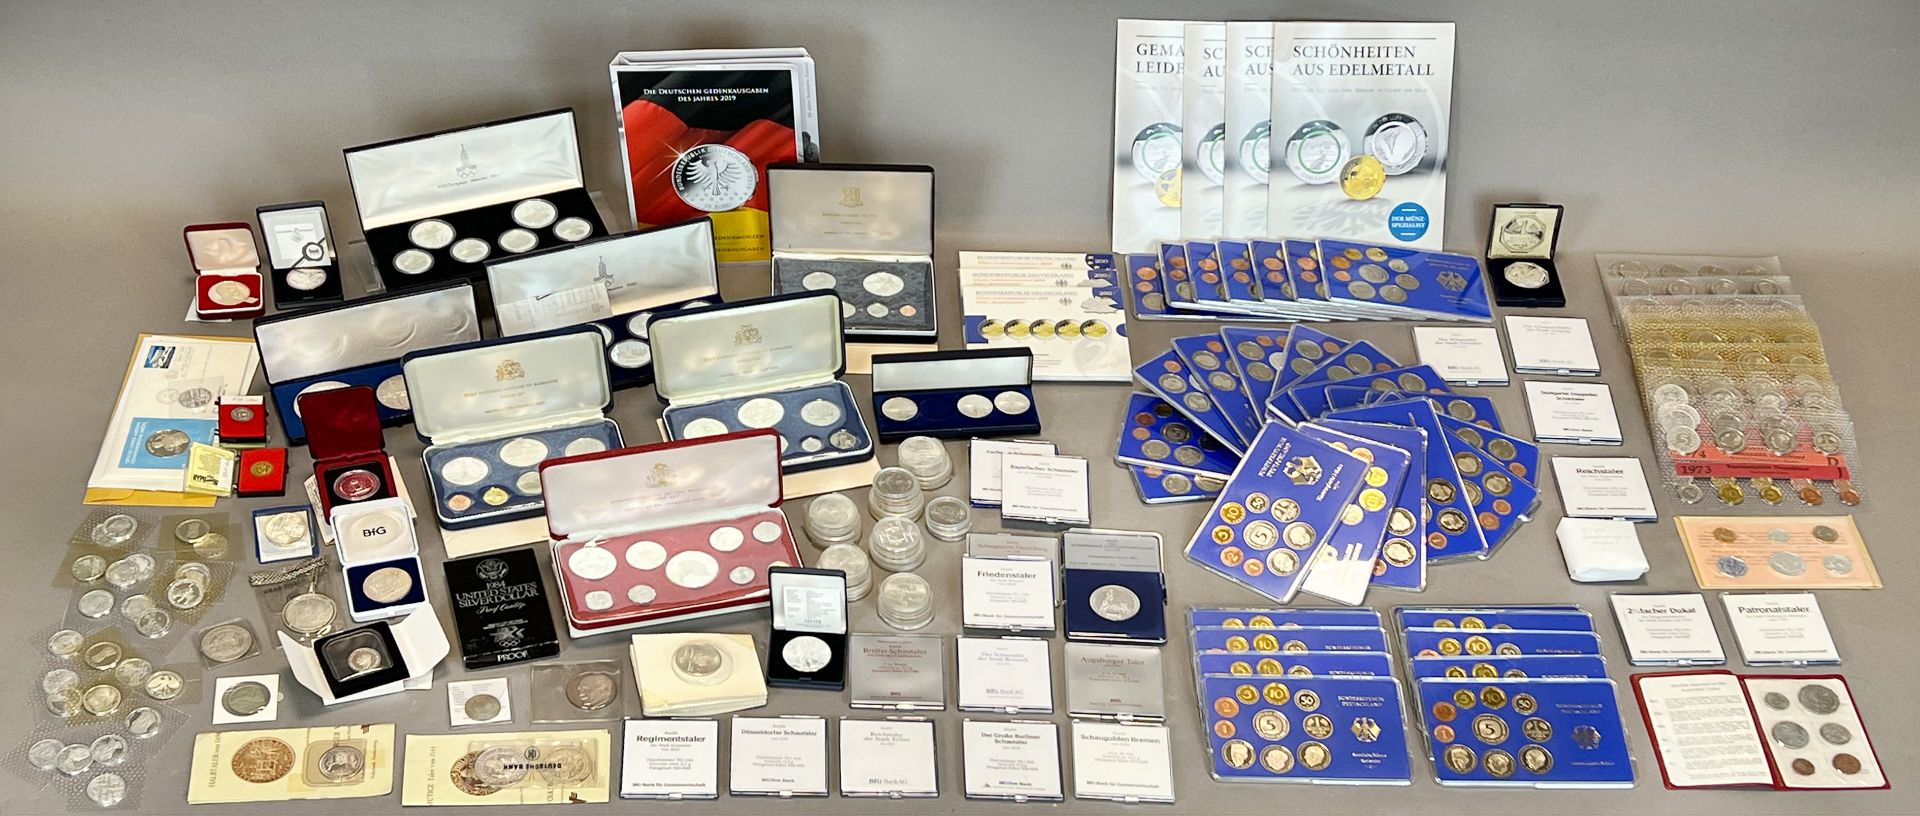 Große Sammlung von Münzen. Silbermünzen, Umlaufmünzen, DM-Münzen und Euro-Münzen.